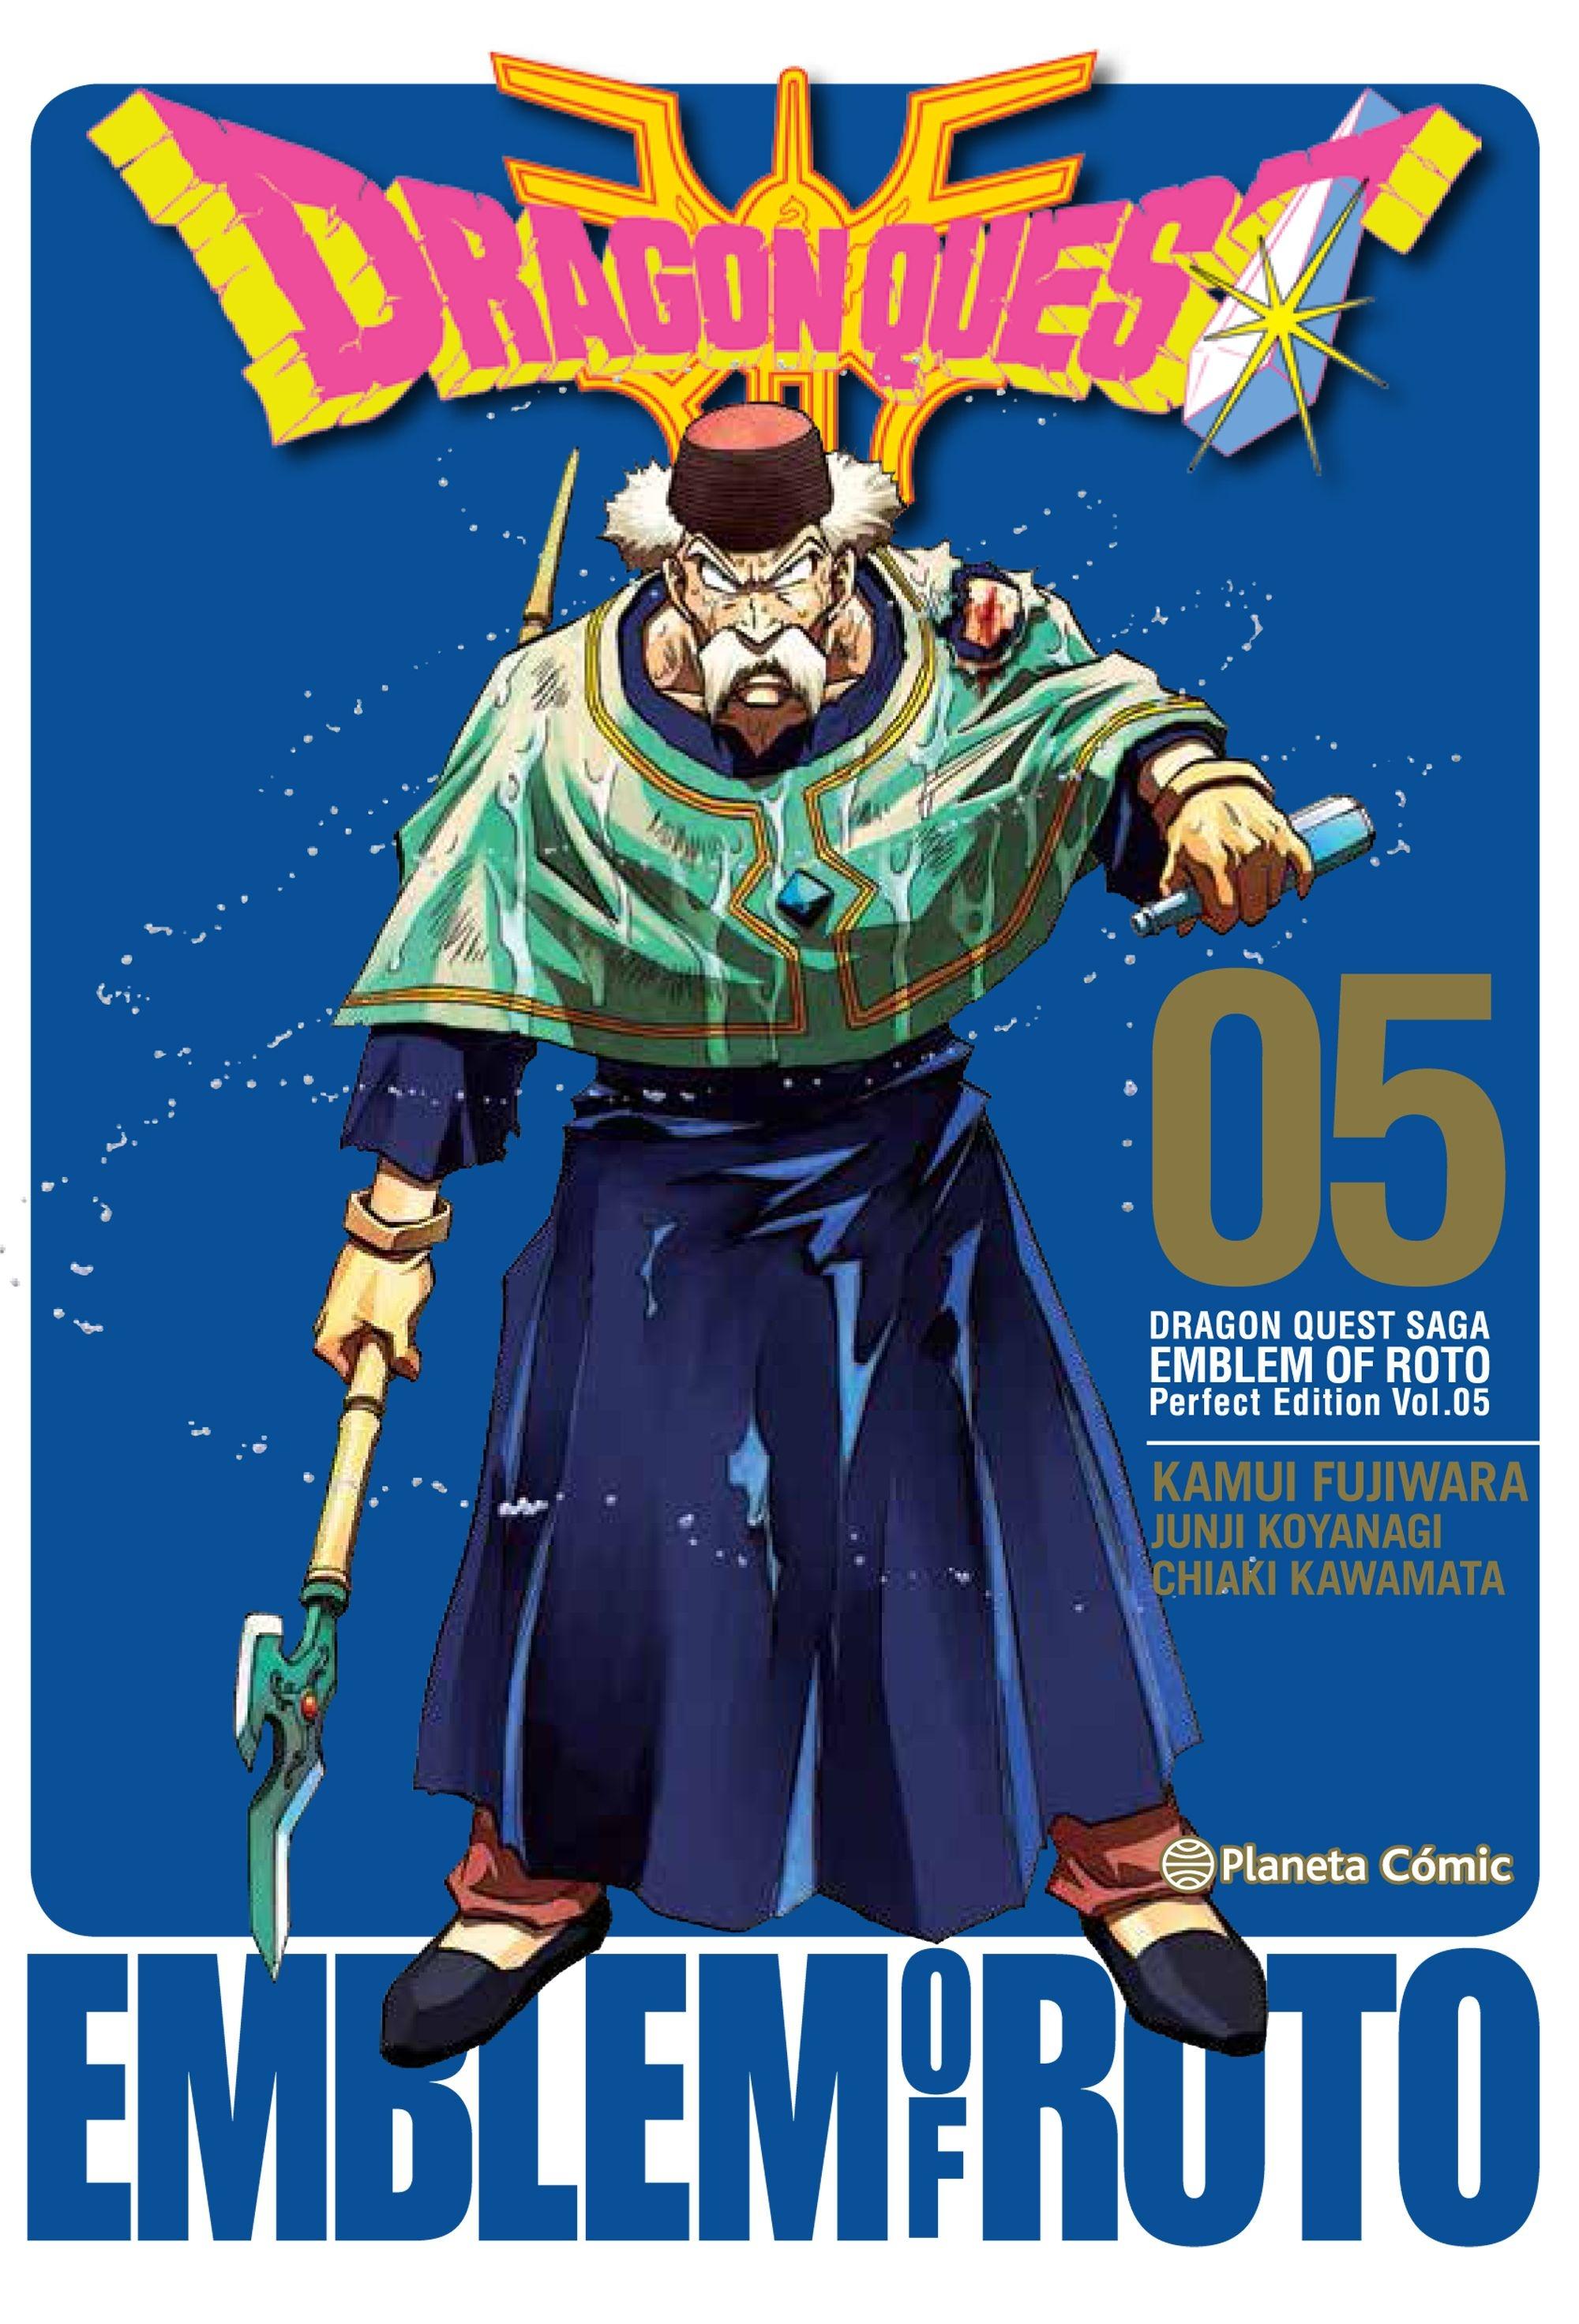 Dragon Quest Saga | Emblem Of Roto Nº 05/15 "Perfect Edition Vol. 05"